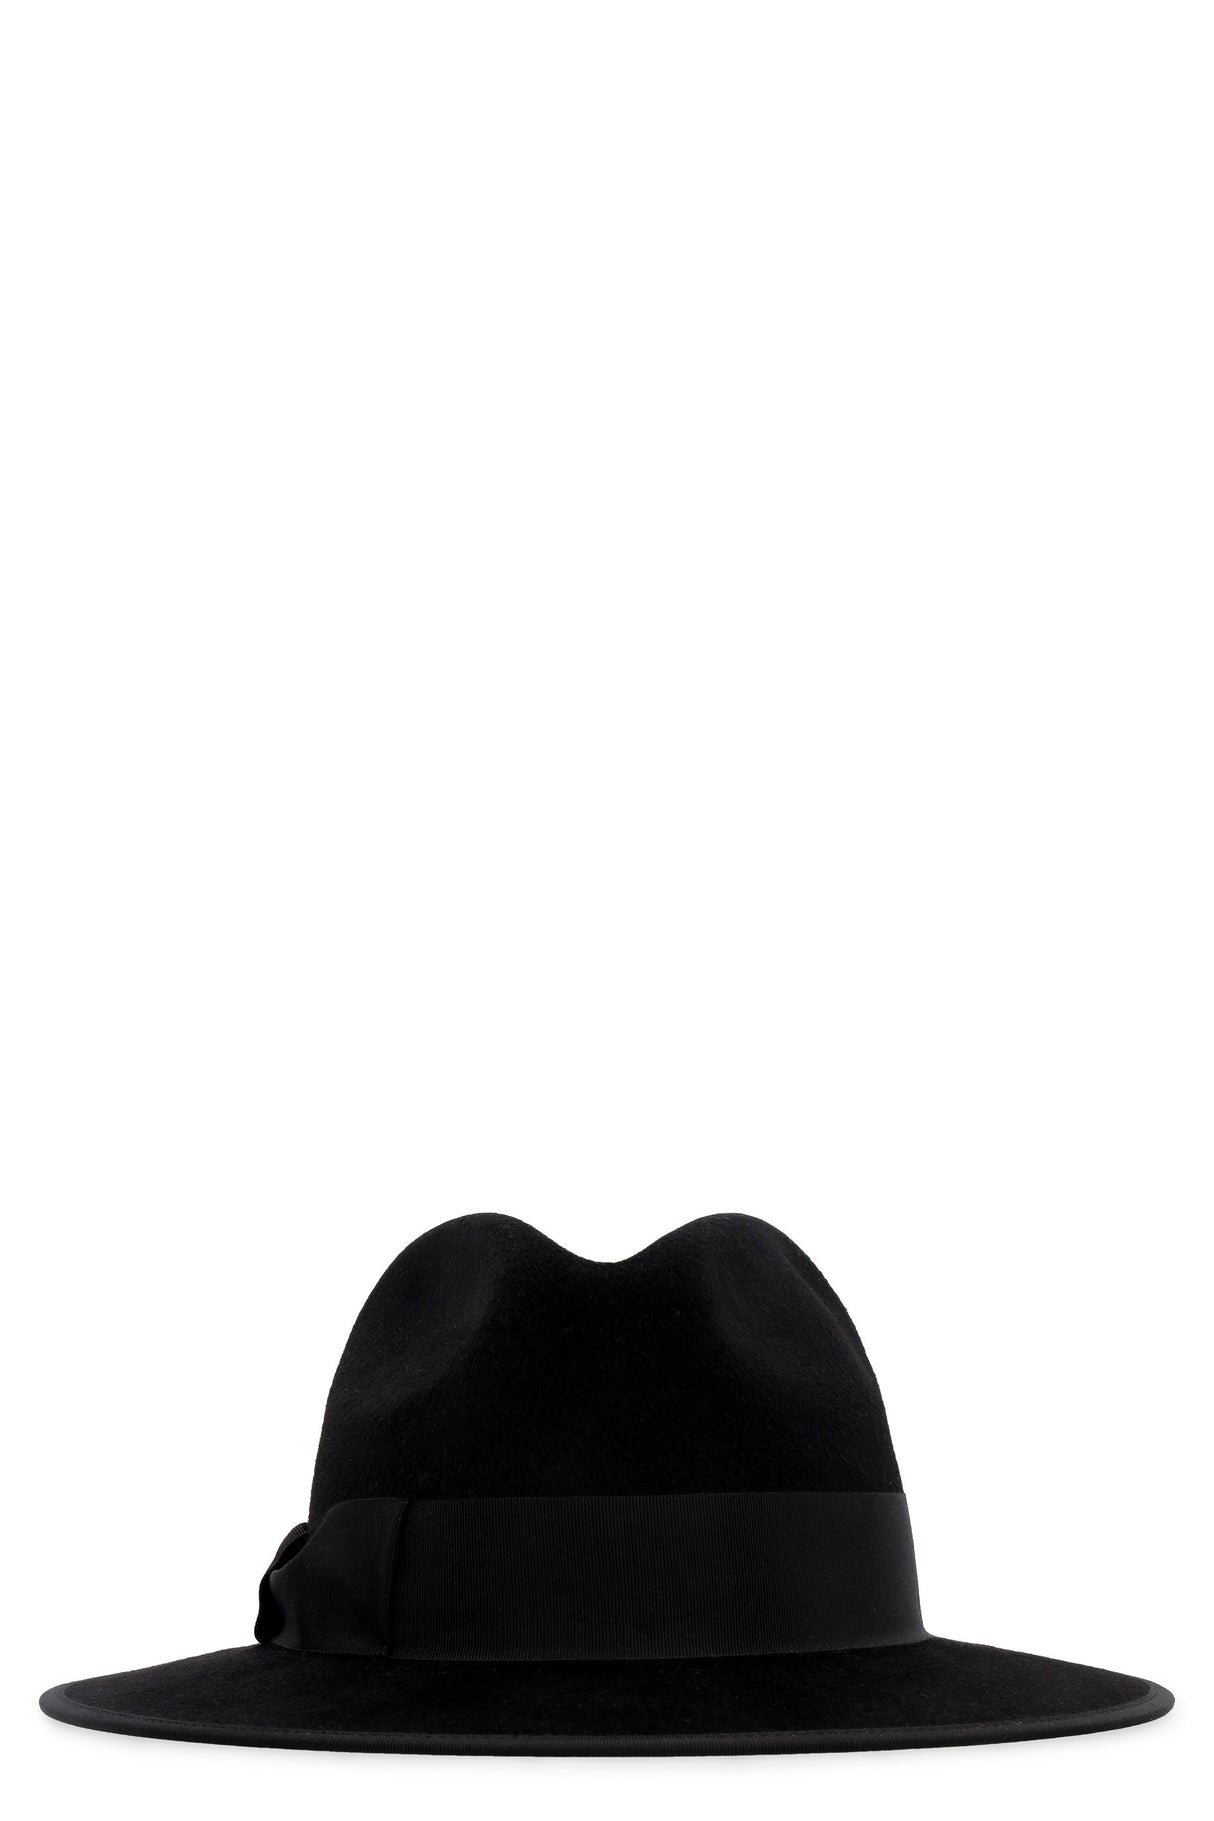 قبعة فاخرة من اللباد الأسود للنساء - خريف/شتاء 2020